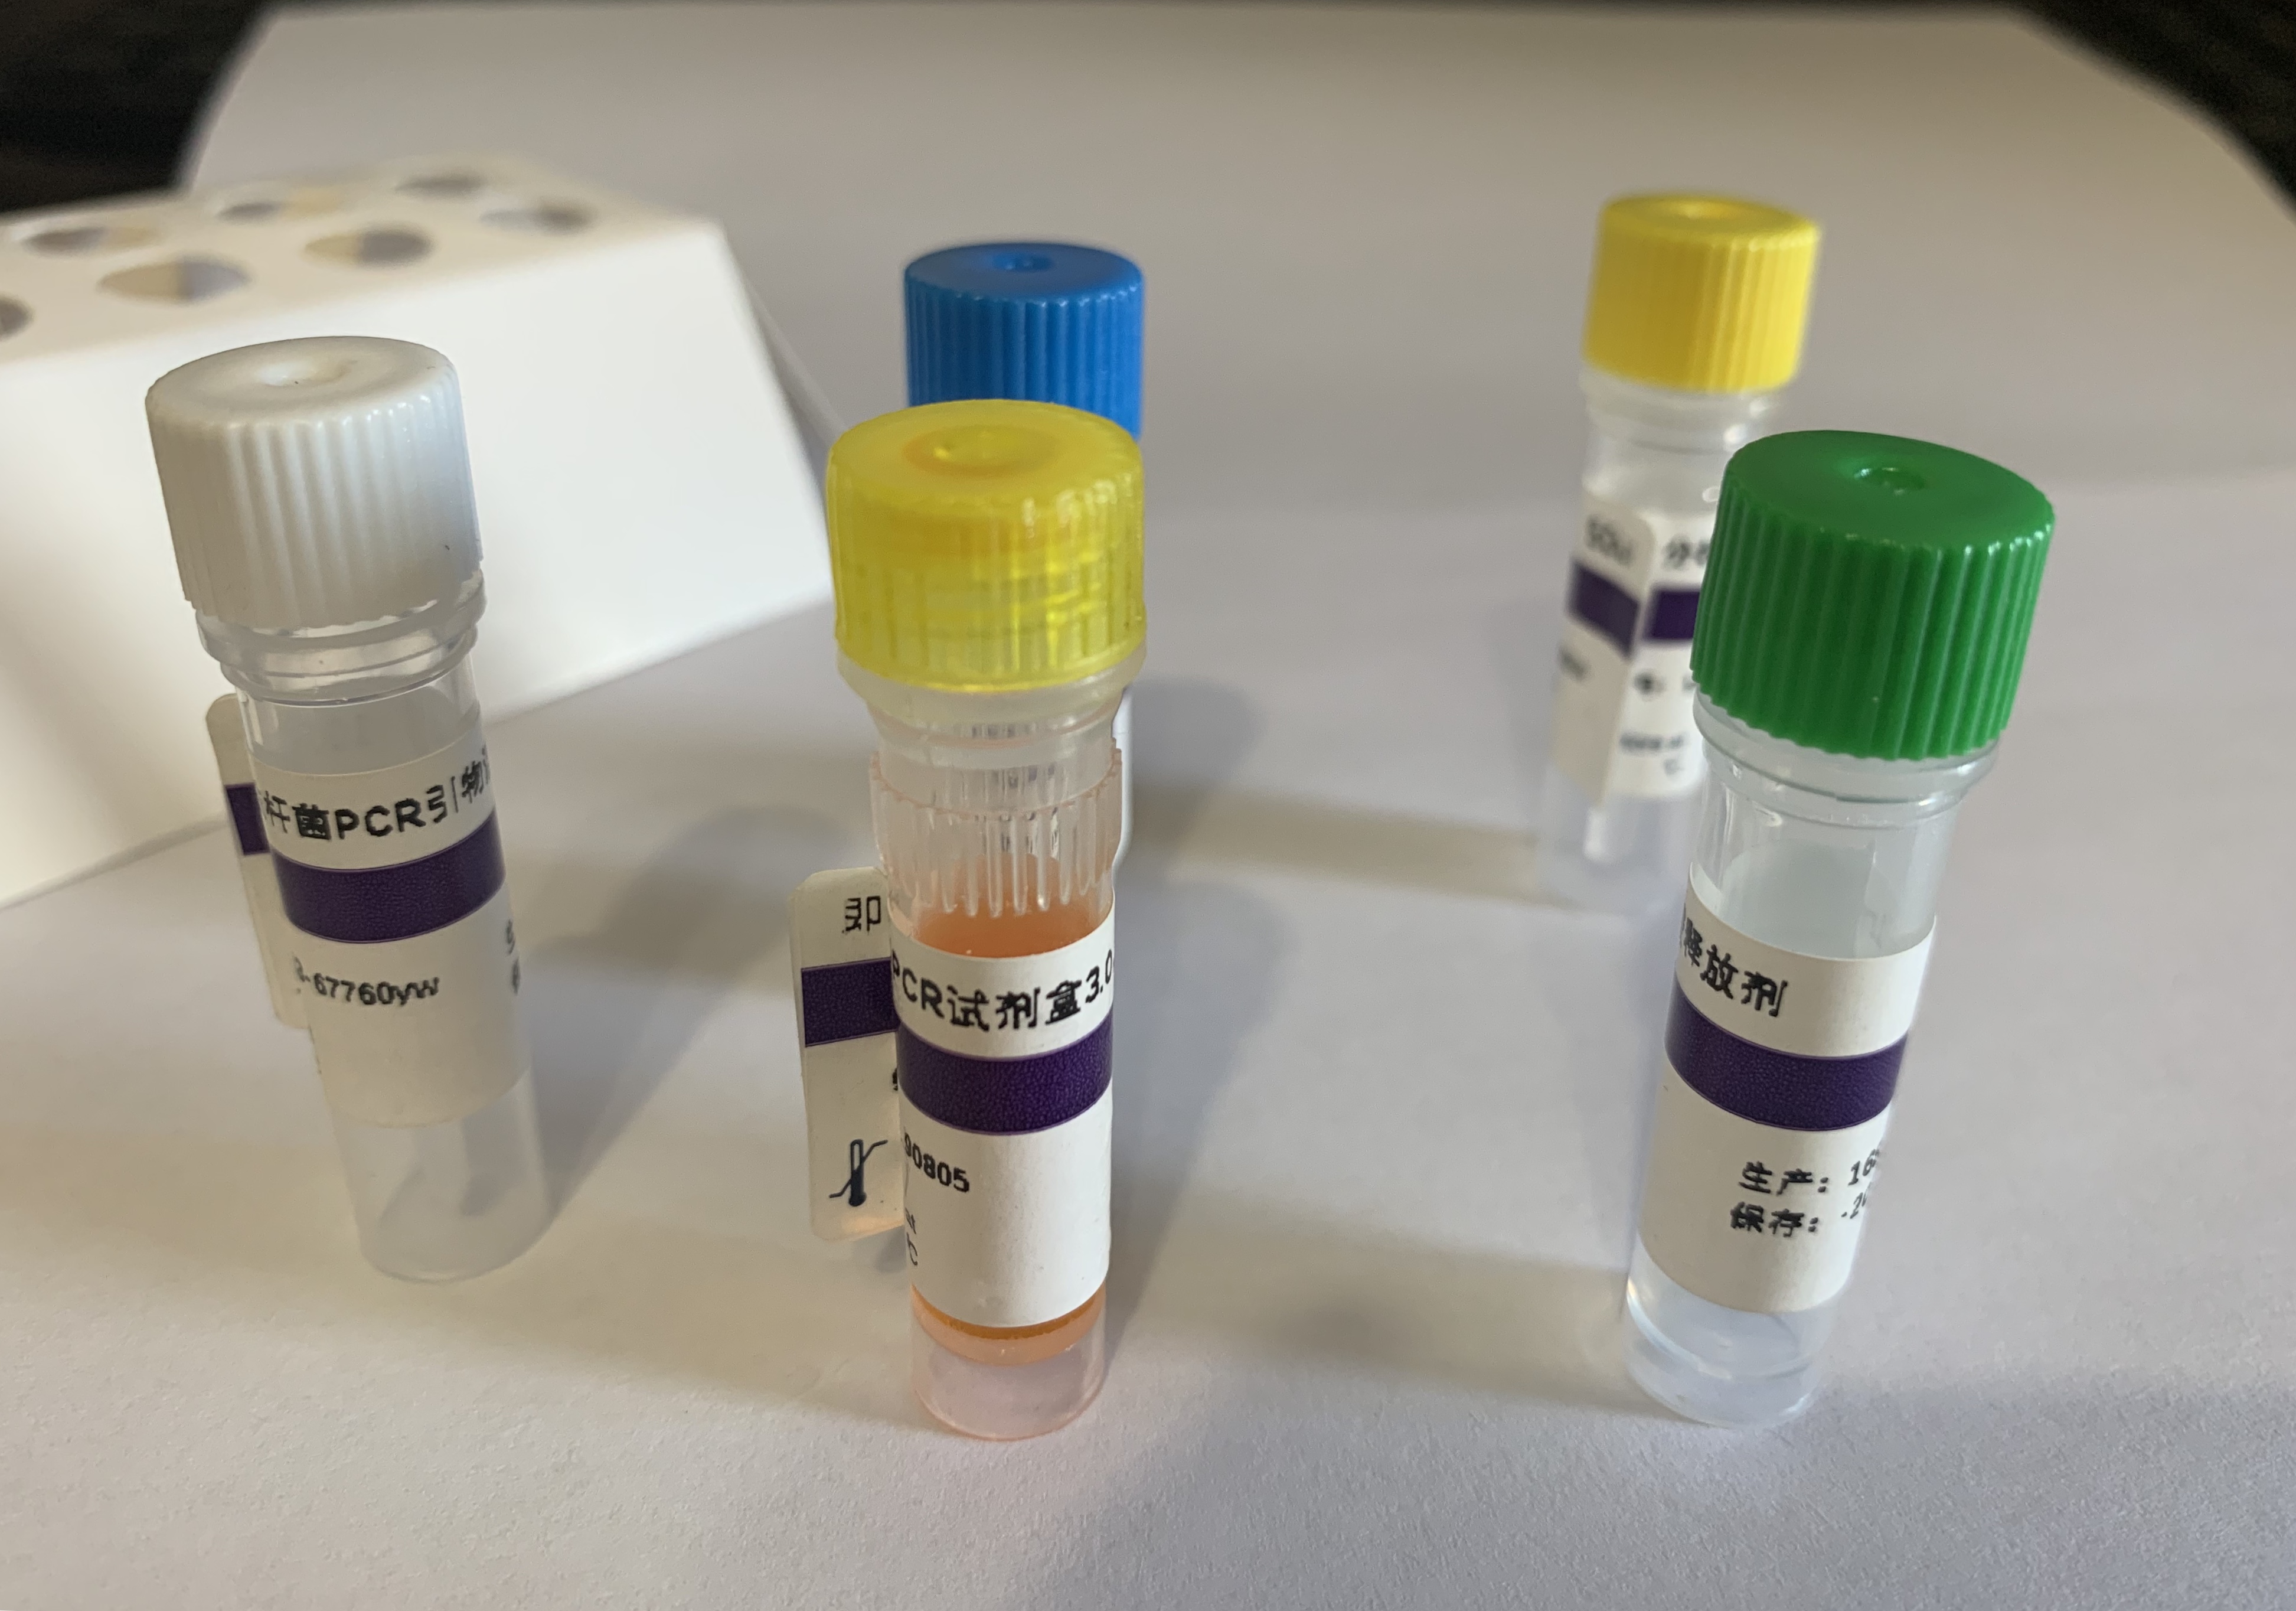 甲型流感（禽流感）病毒N8亚型探针法荧光定量RT-PCR试剂盒